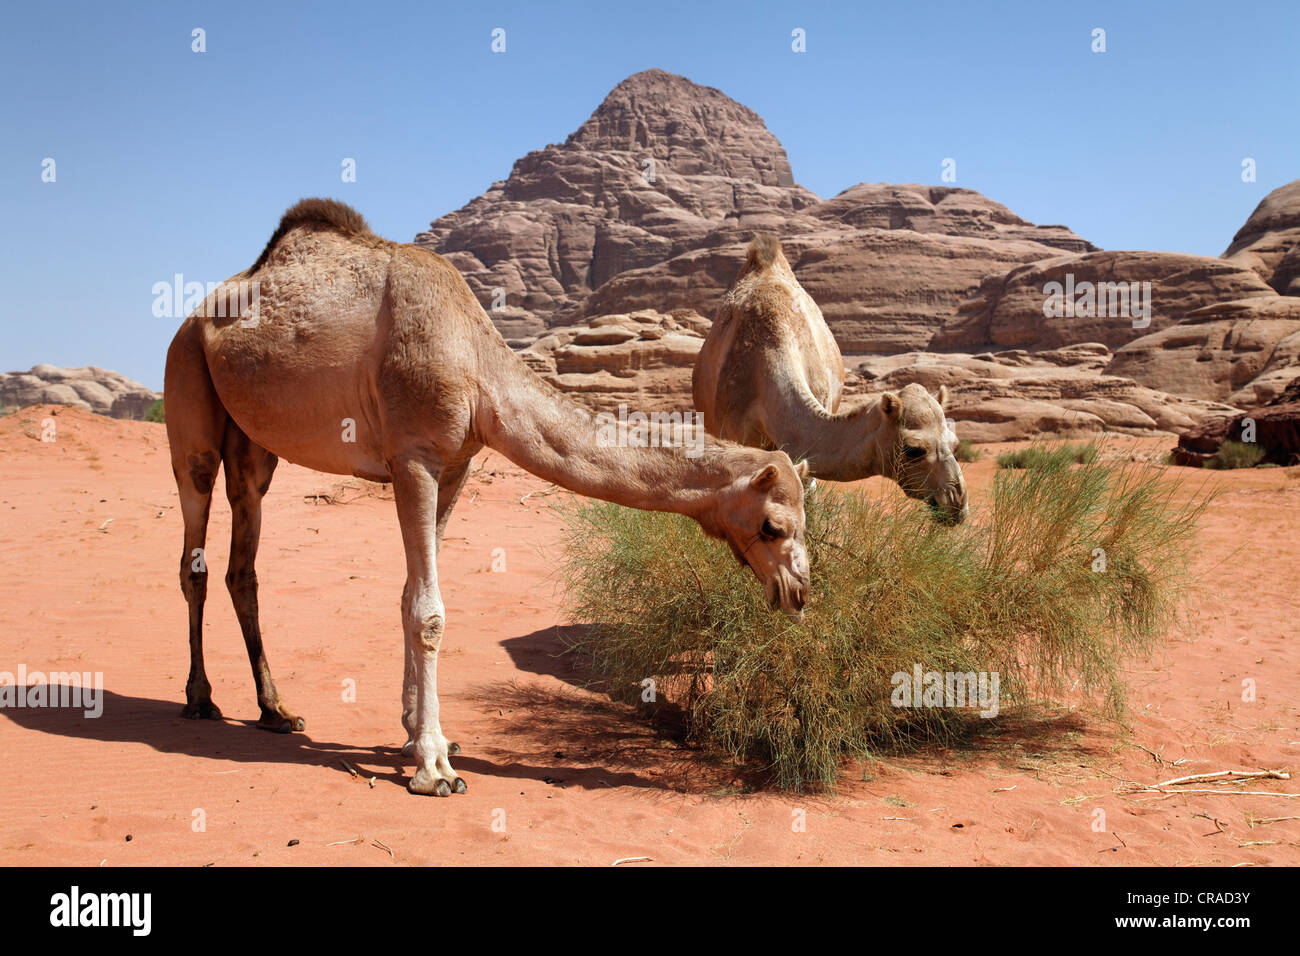 Des dromadaires ou des chameaux d'Arabie (Camelus dromedarius) se nourrissant d'un buisson dans désert avec du sable rouge, Wadi Rum Banque D'Images